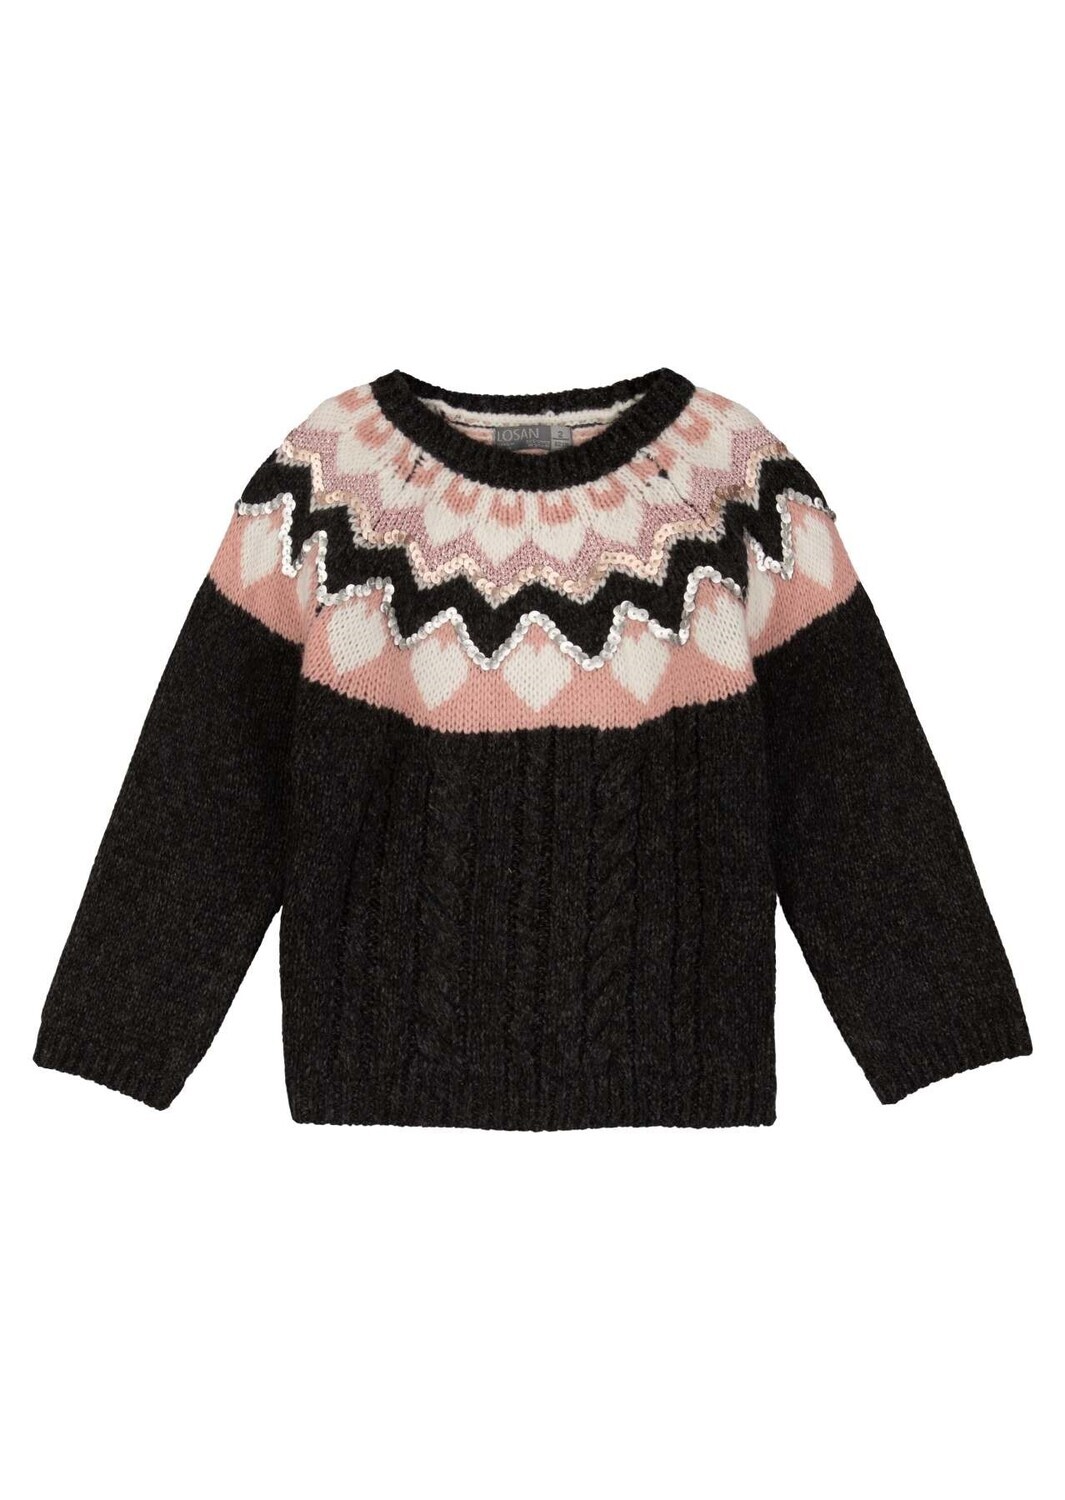 Losan Girls Sweater Topped W/ Jacquard 126-5001